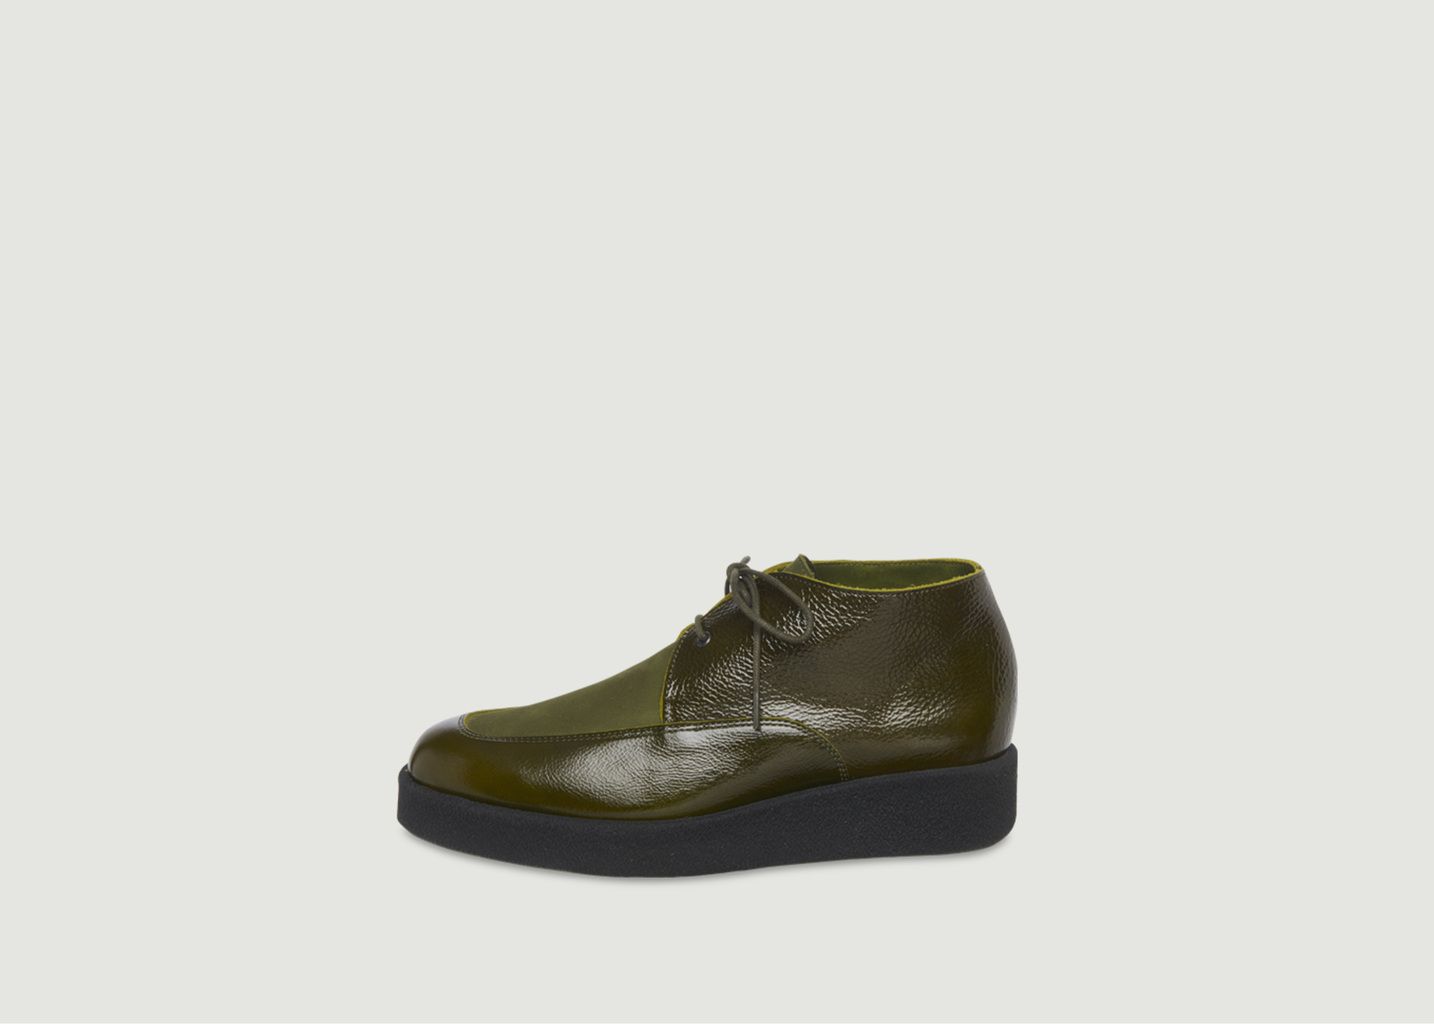 Comano leather boots - Arche